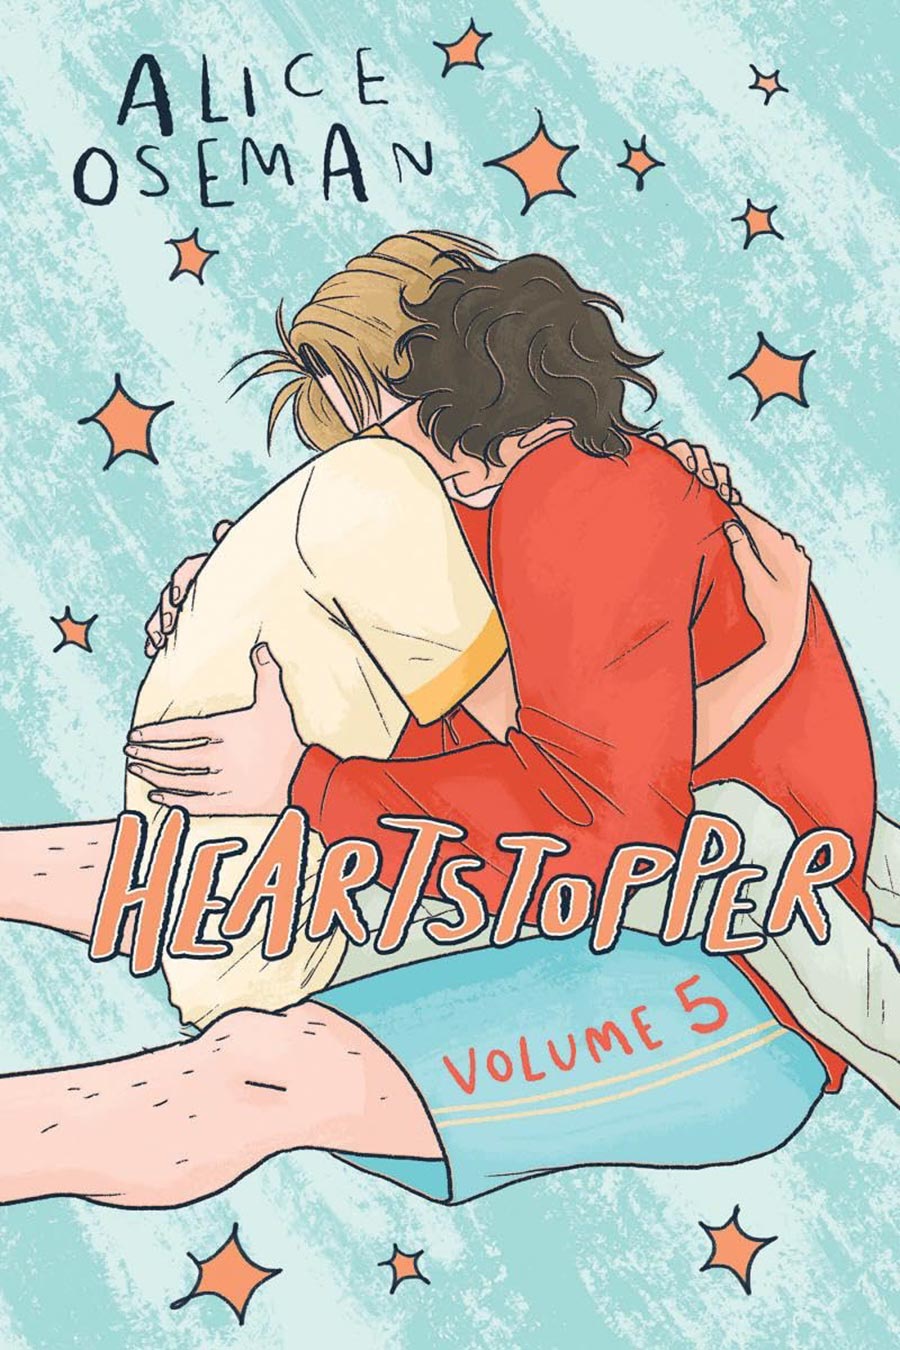 Heartstopper Vol 5 TP